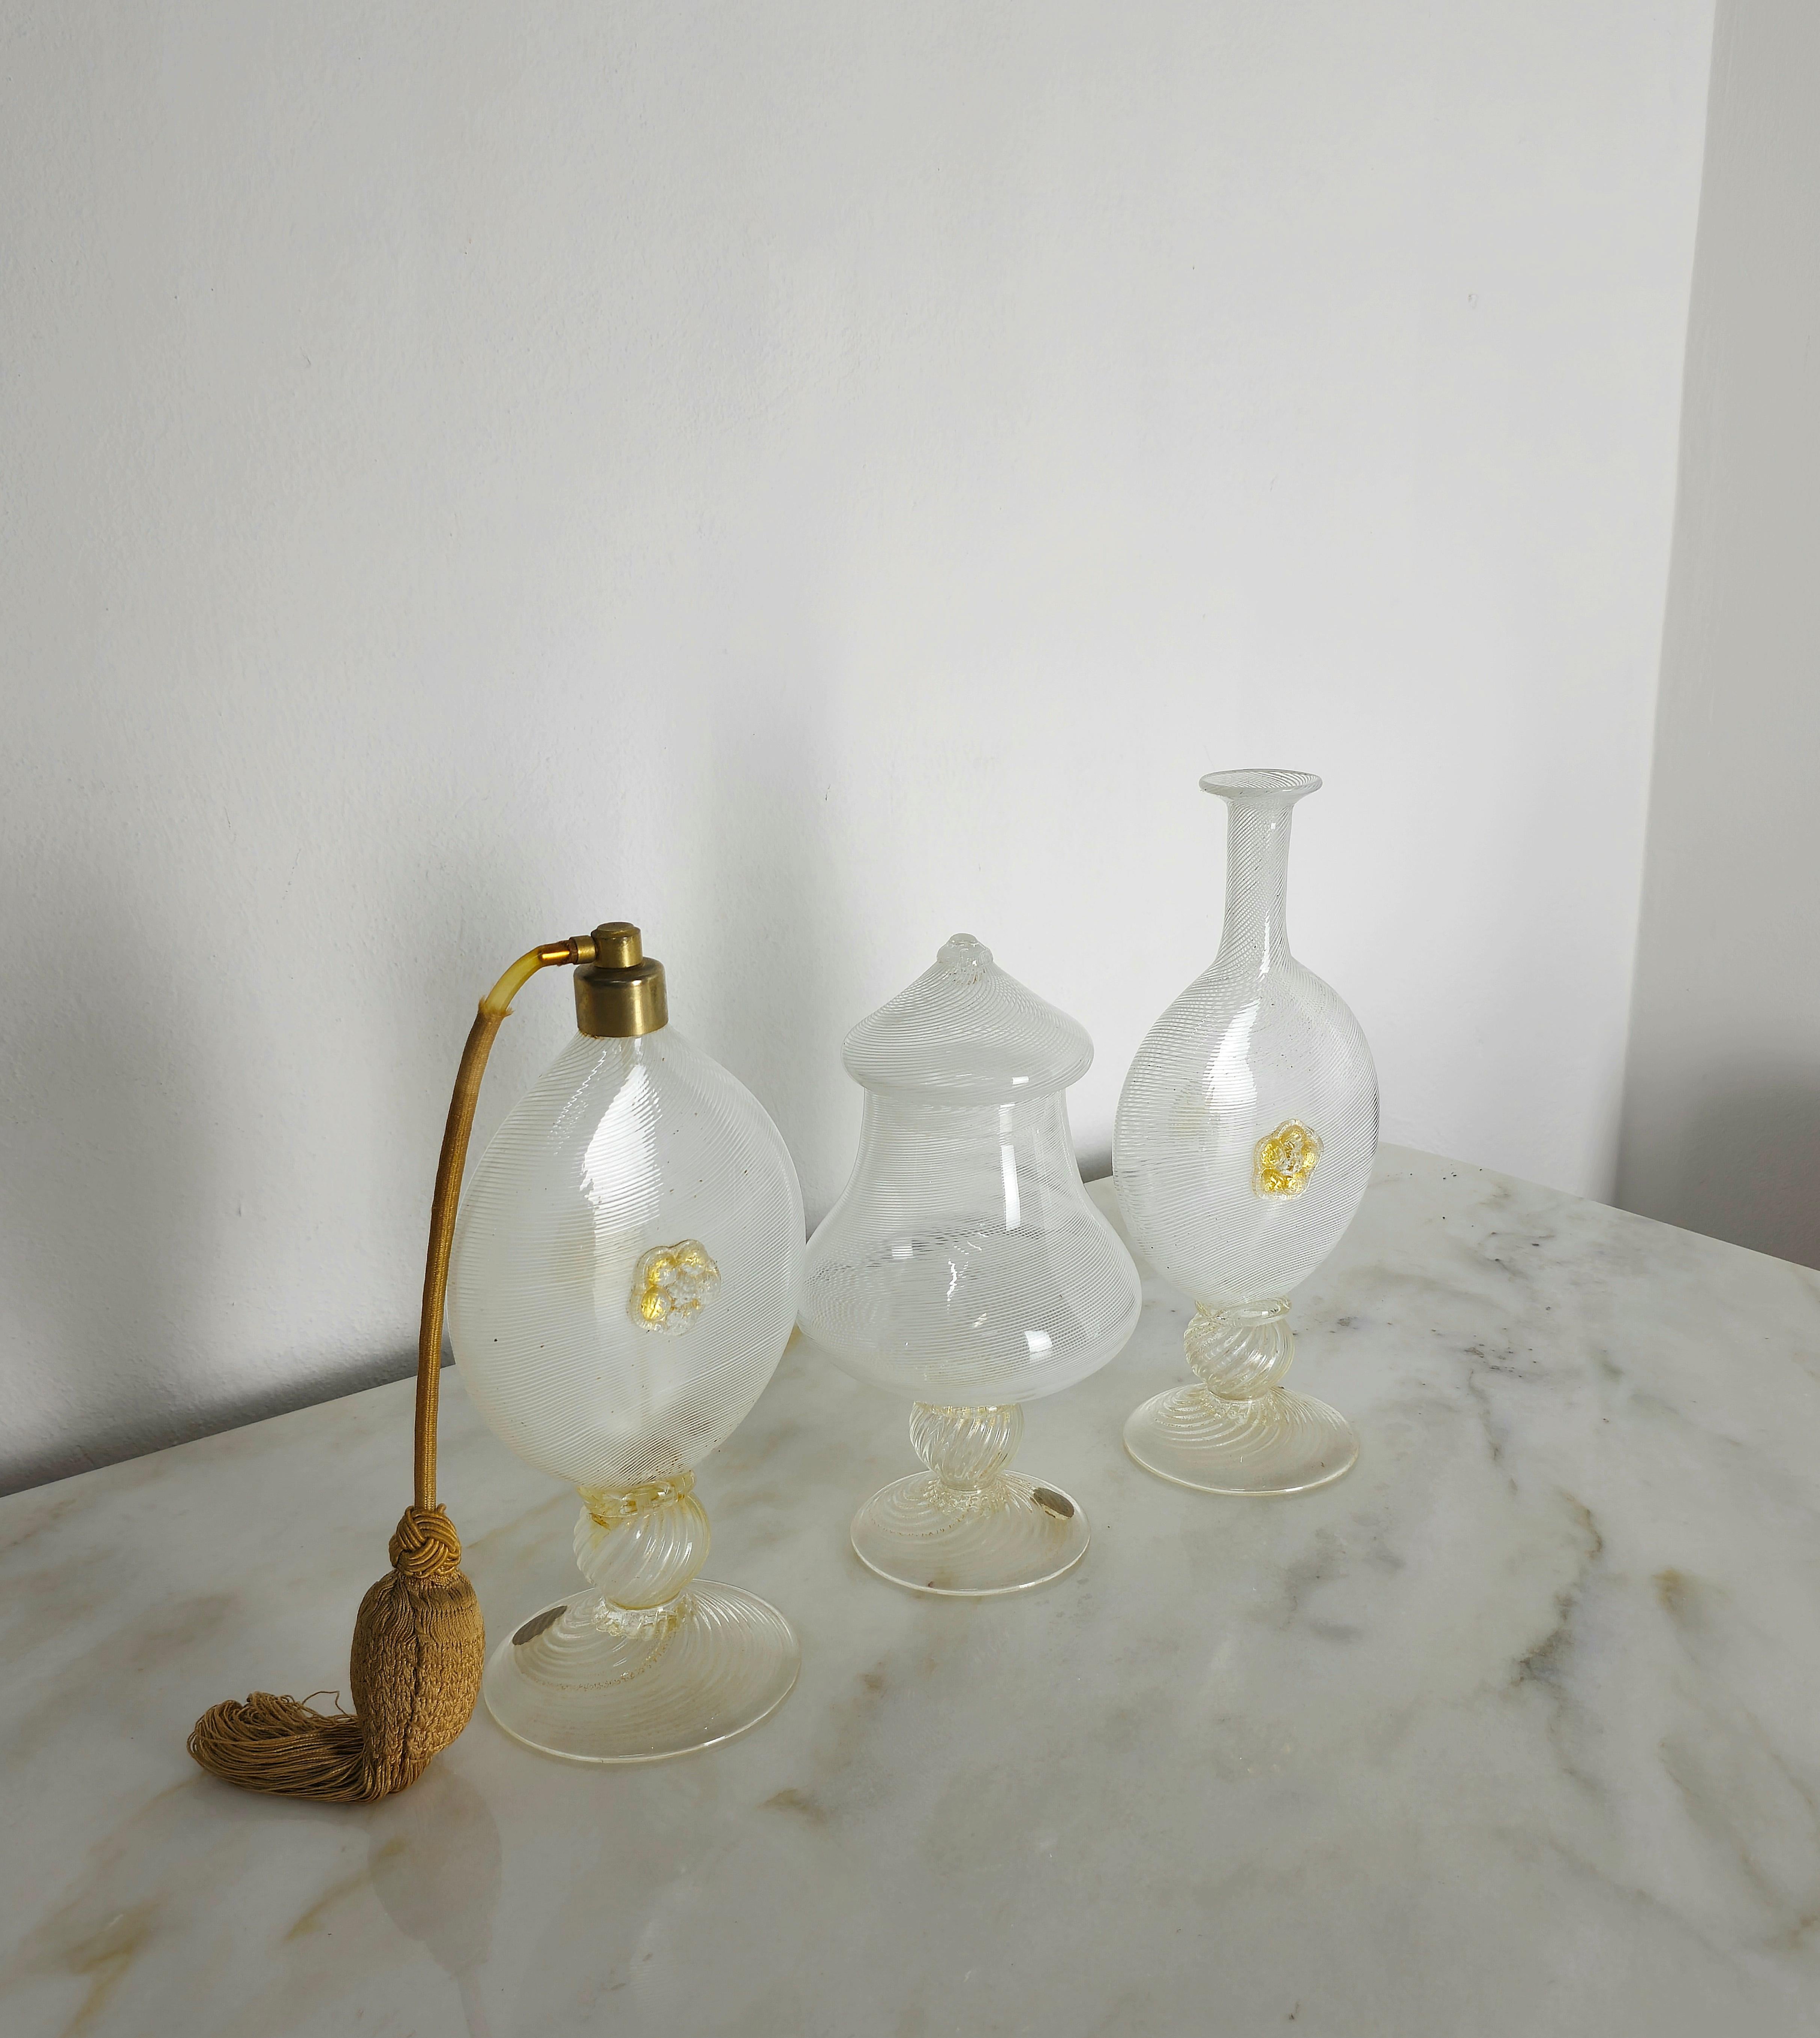 Ensemble de 3 objets de salle de bain/toilette réalisés dans les années 1940 par Barovier&Toso en verre de Murano avec filigrane blanc dans les tons de transparent et de blanc avec décoration dorée.
Nous tenons à préciser que cet ensemble est vendu